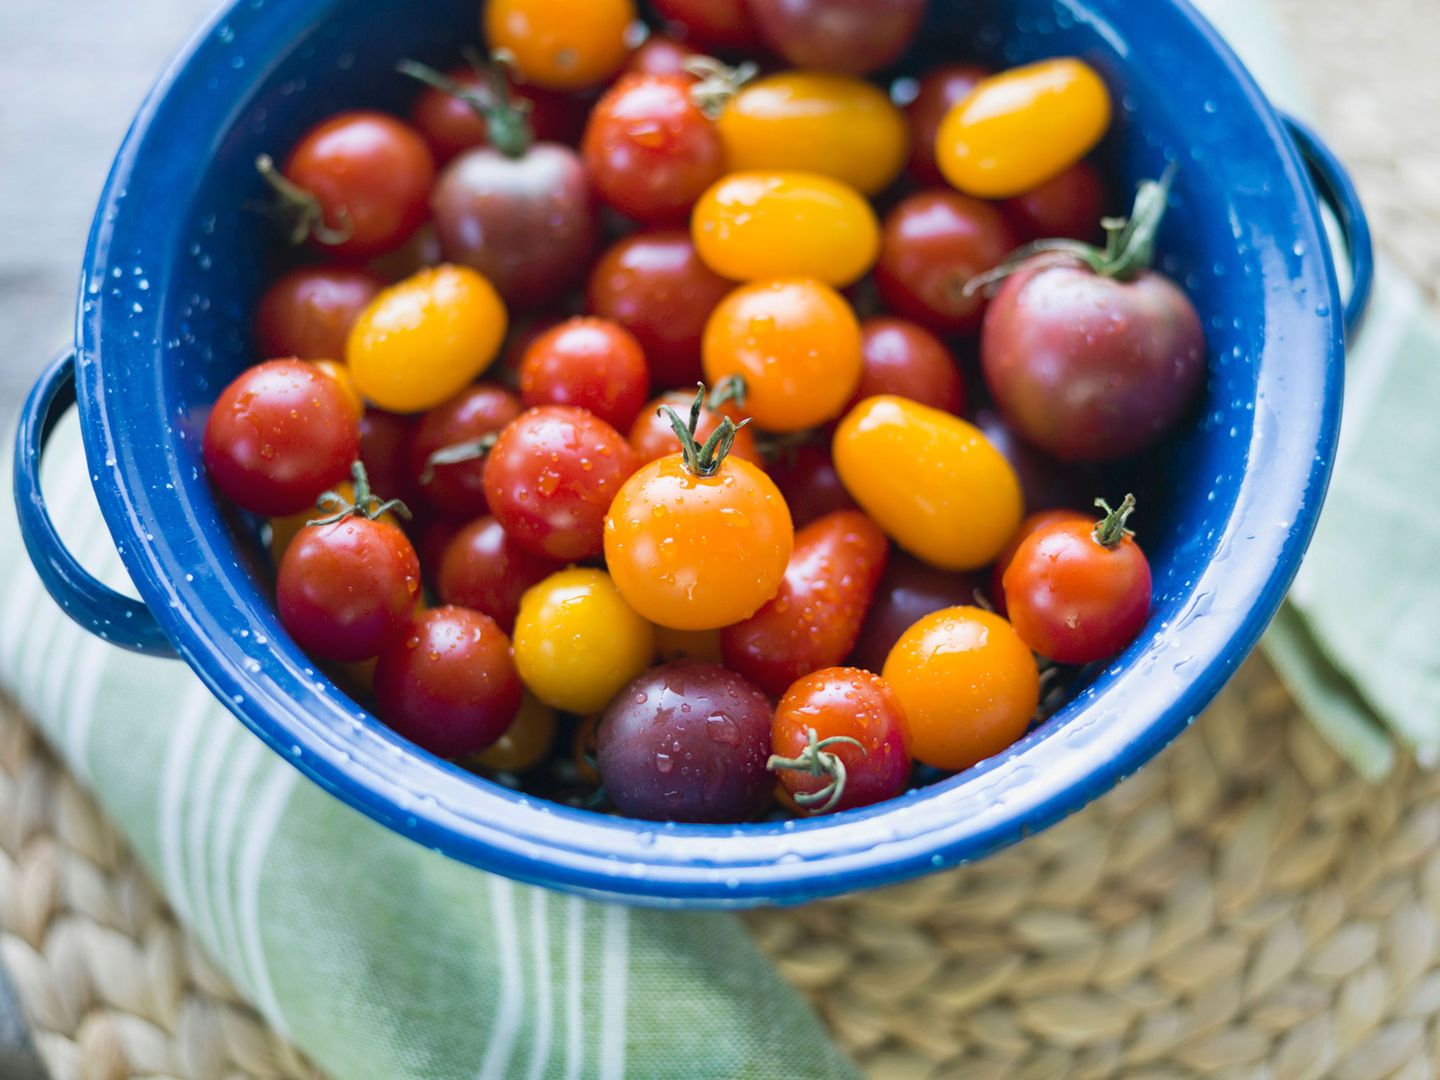 Mediterrane Diät: Mini-Tomaten in einer Schüssel